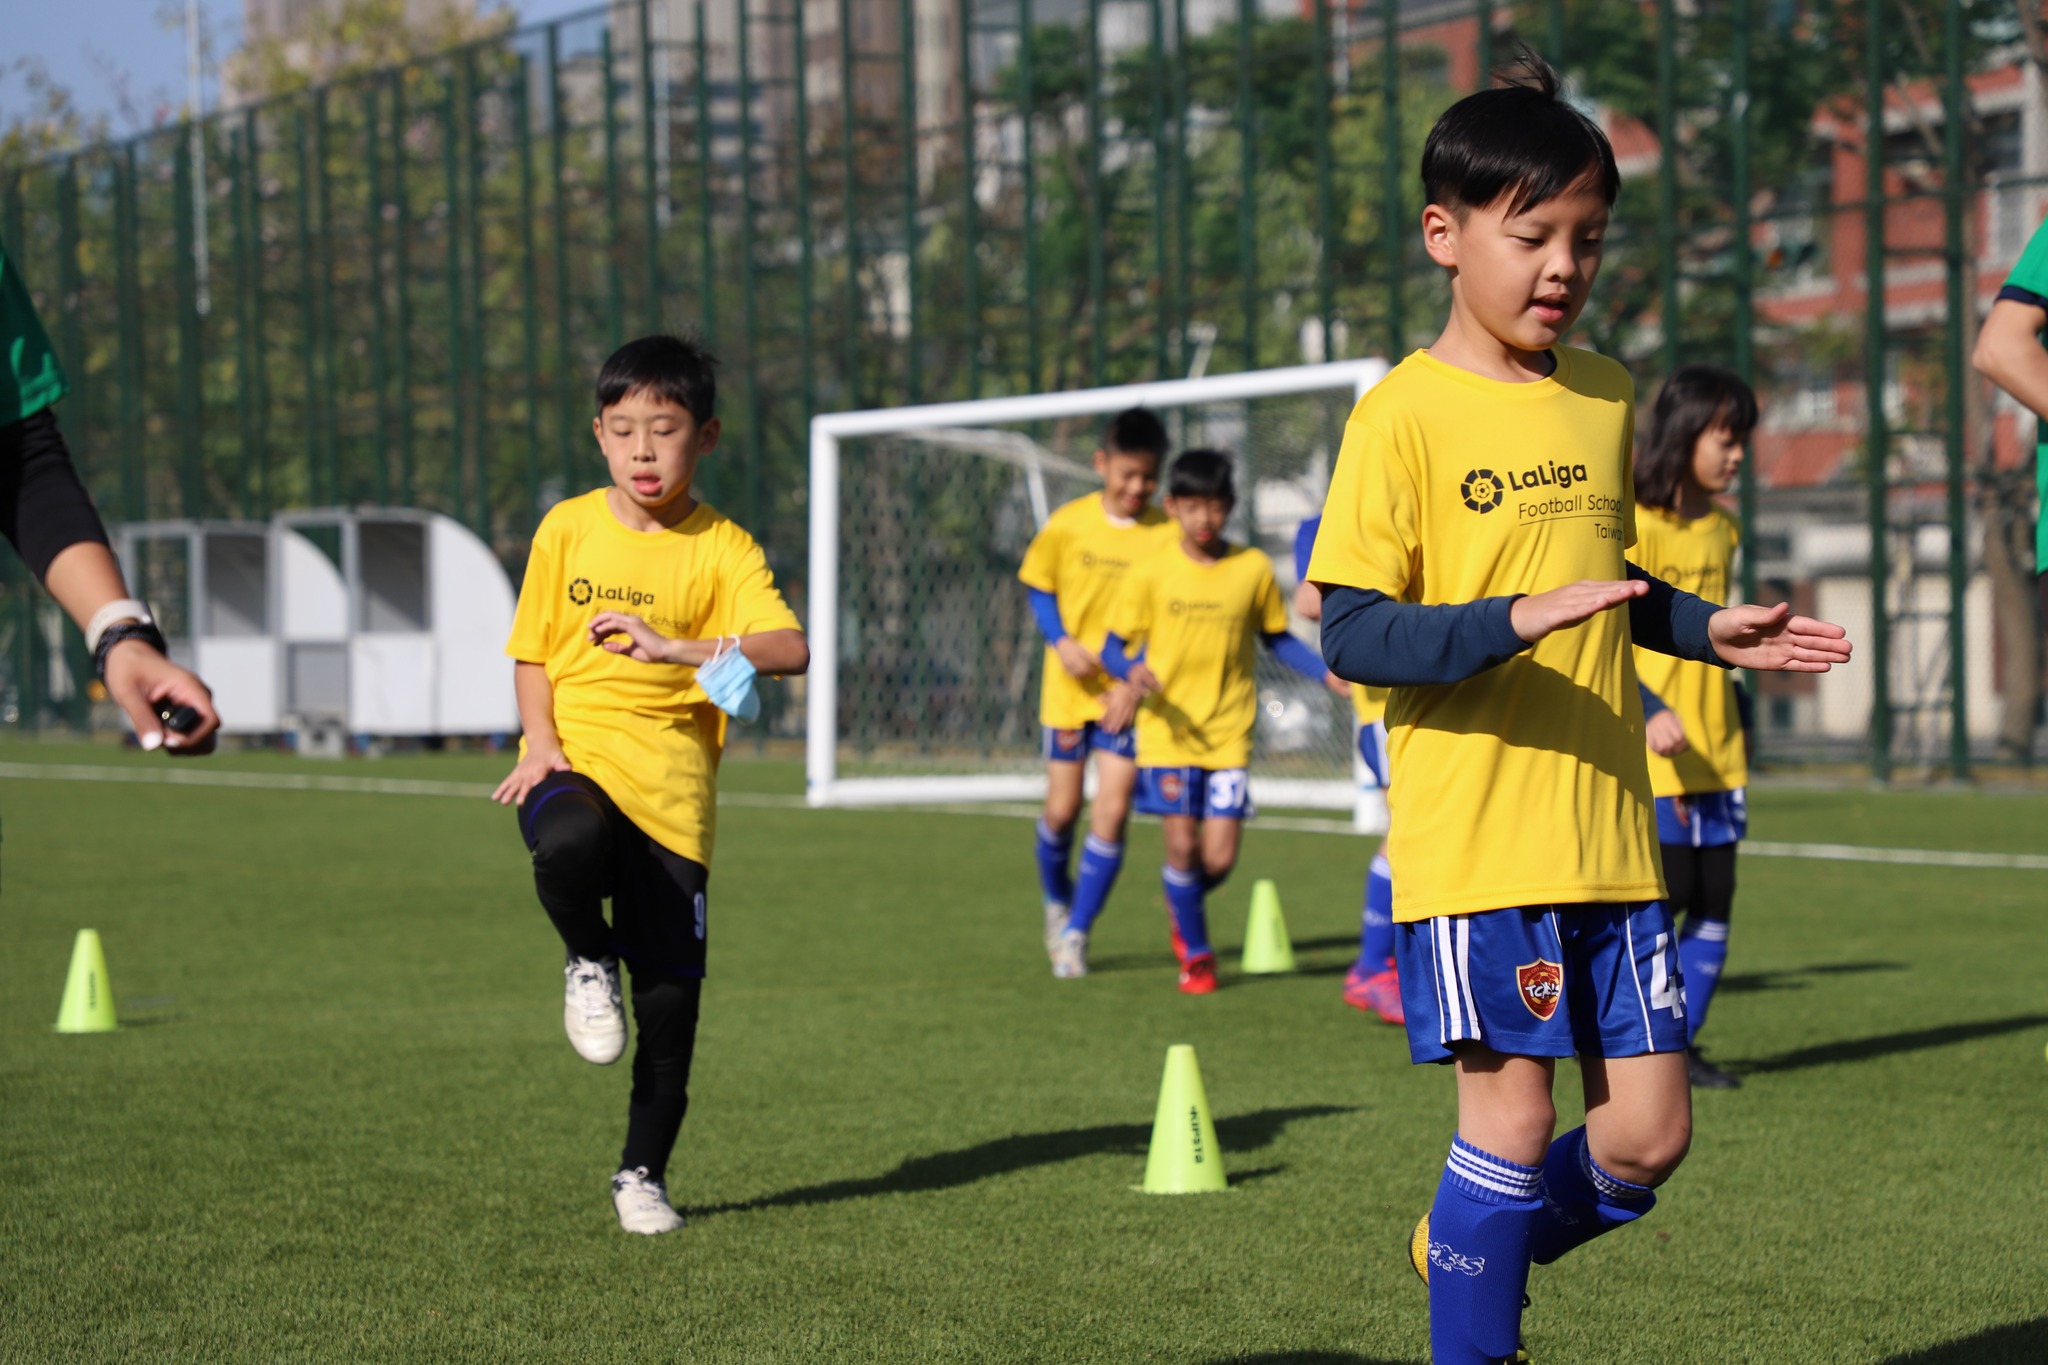 柏文與國際三大足球聯盟之一的西甲合作，獨家引進青訓系統教學課程。官方提供